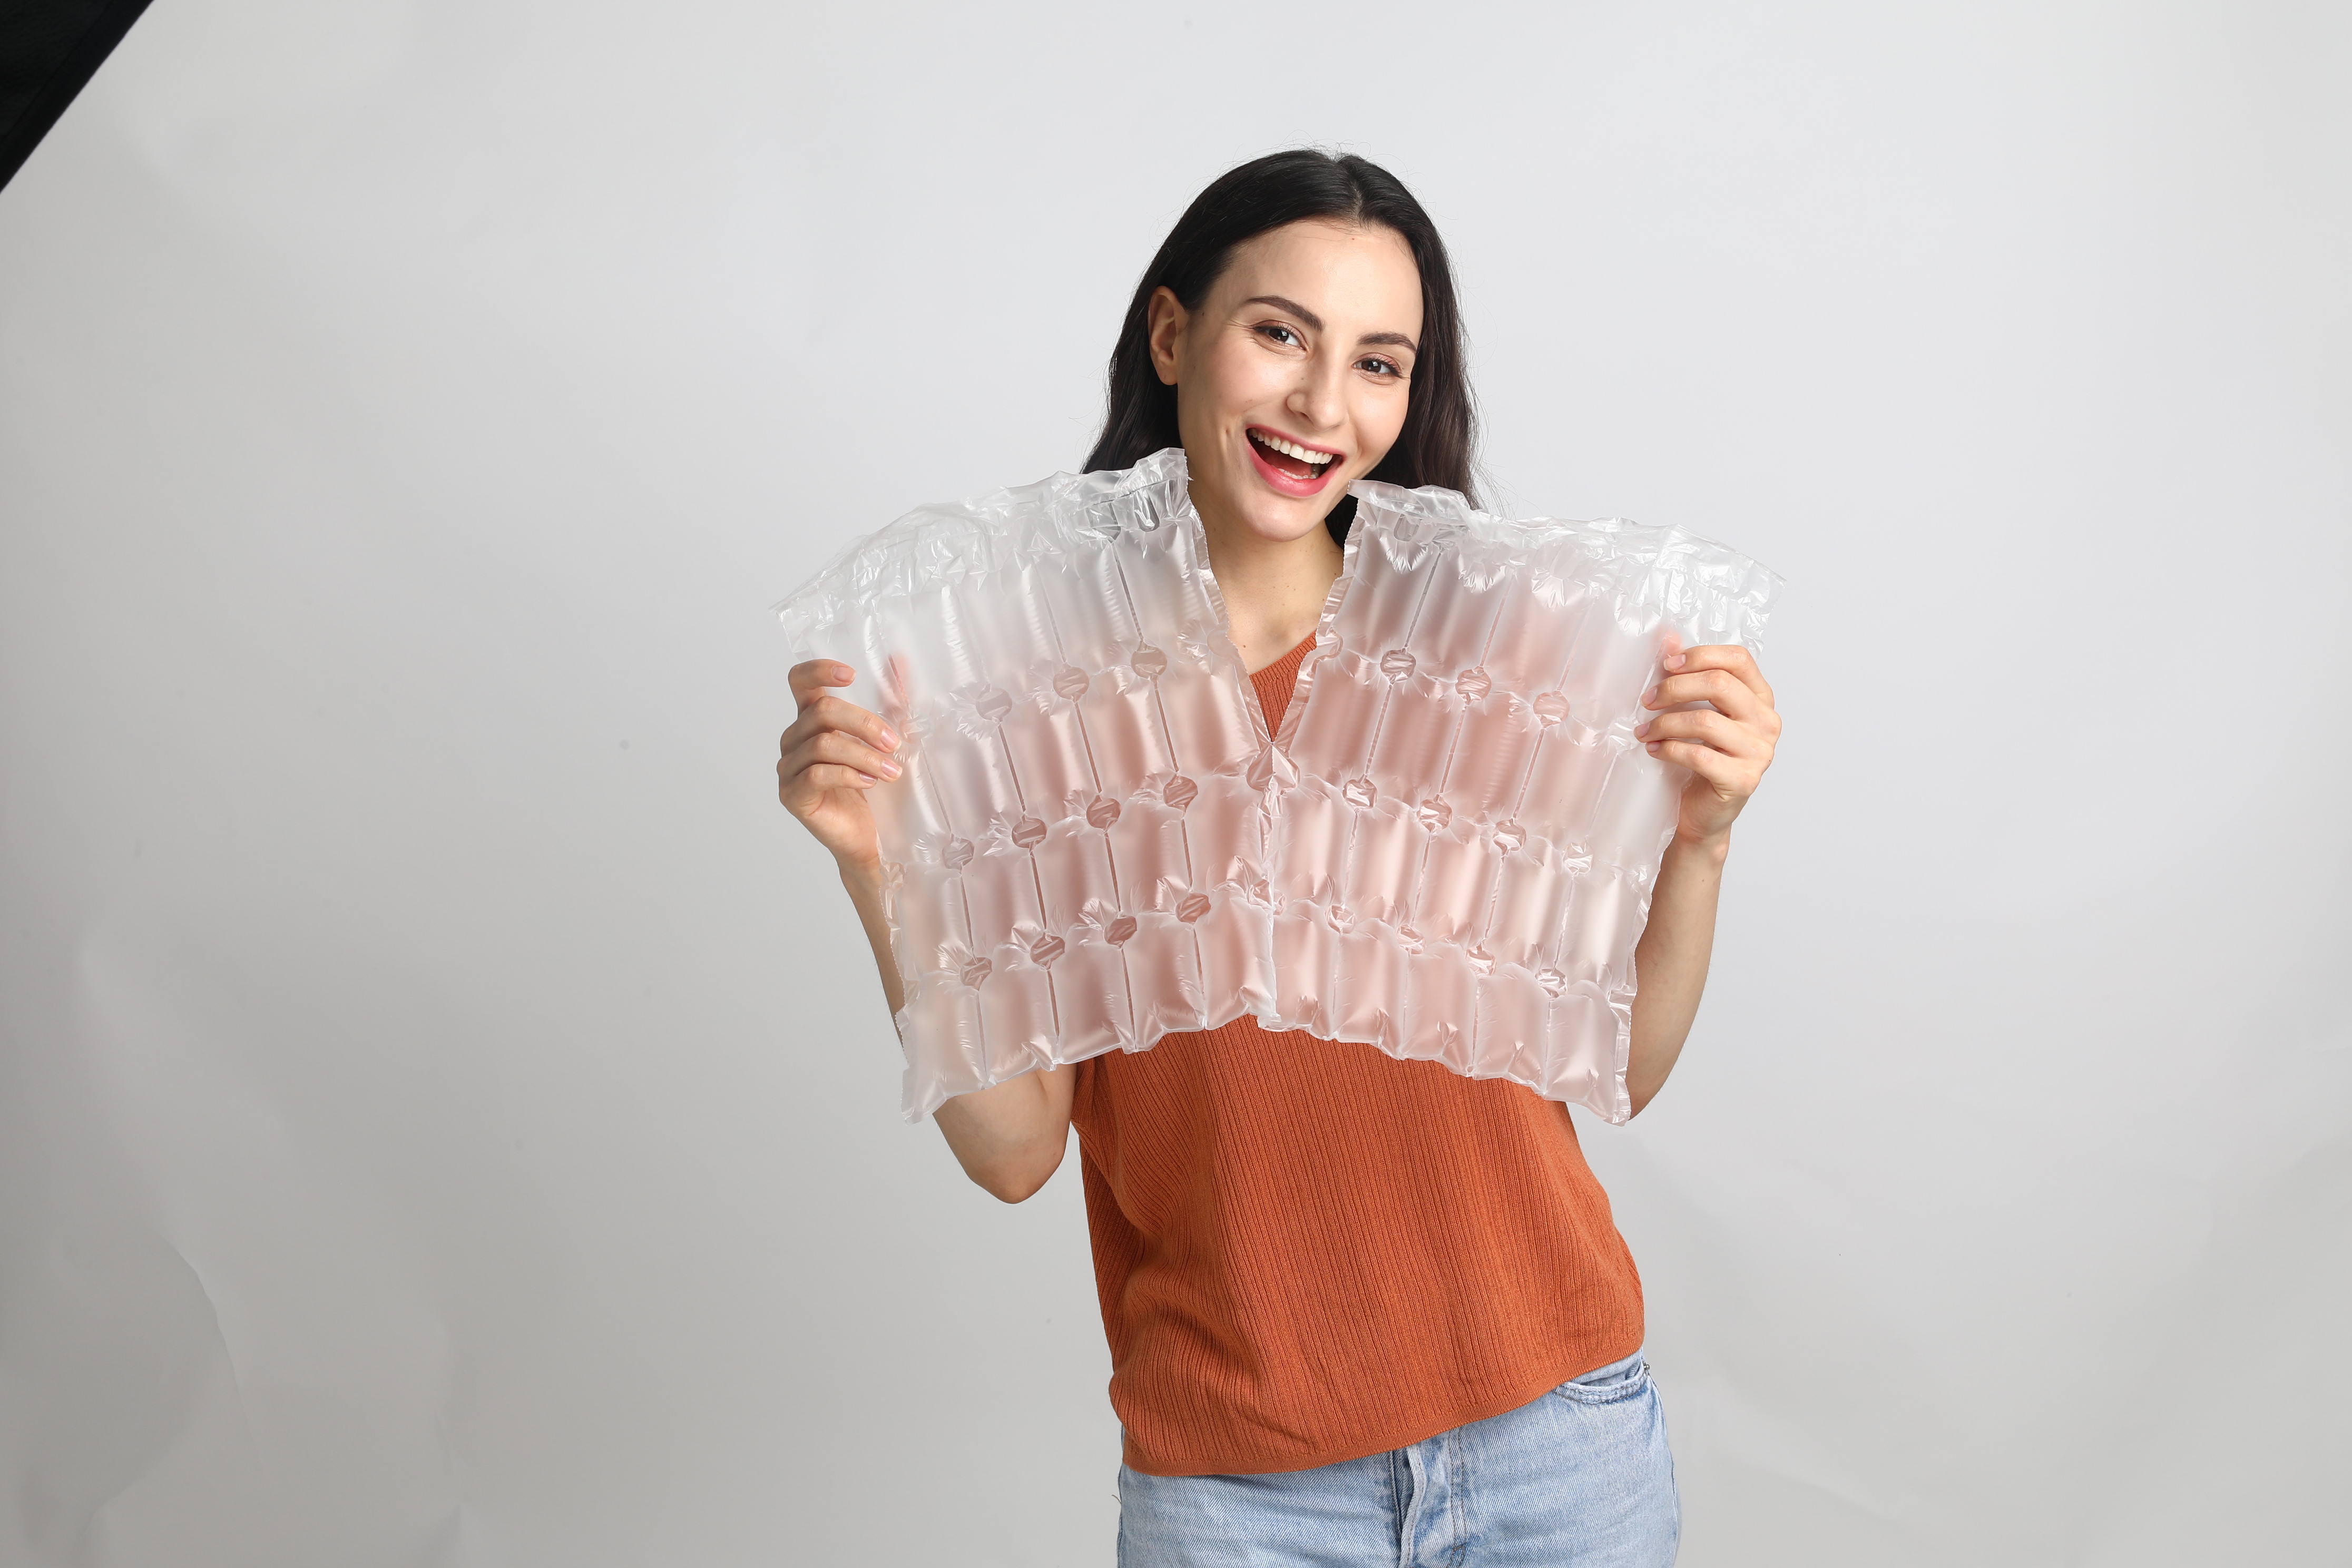 Rollo de plástico de burbujas de aire compostable de alta calidad